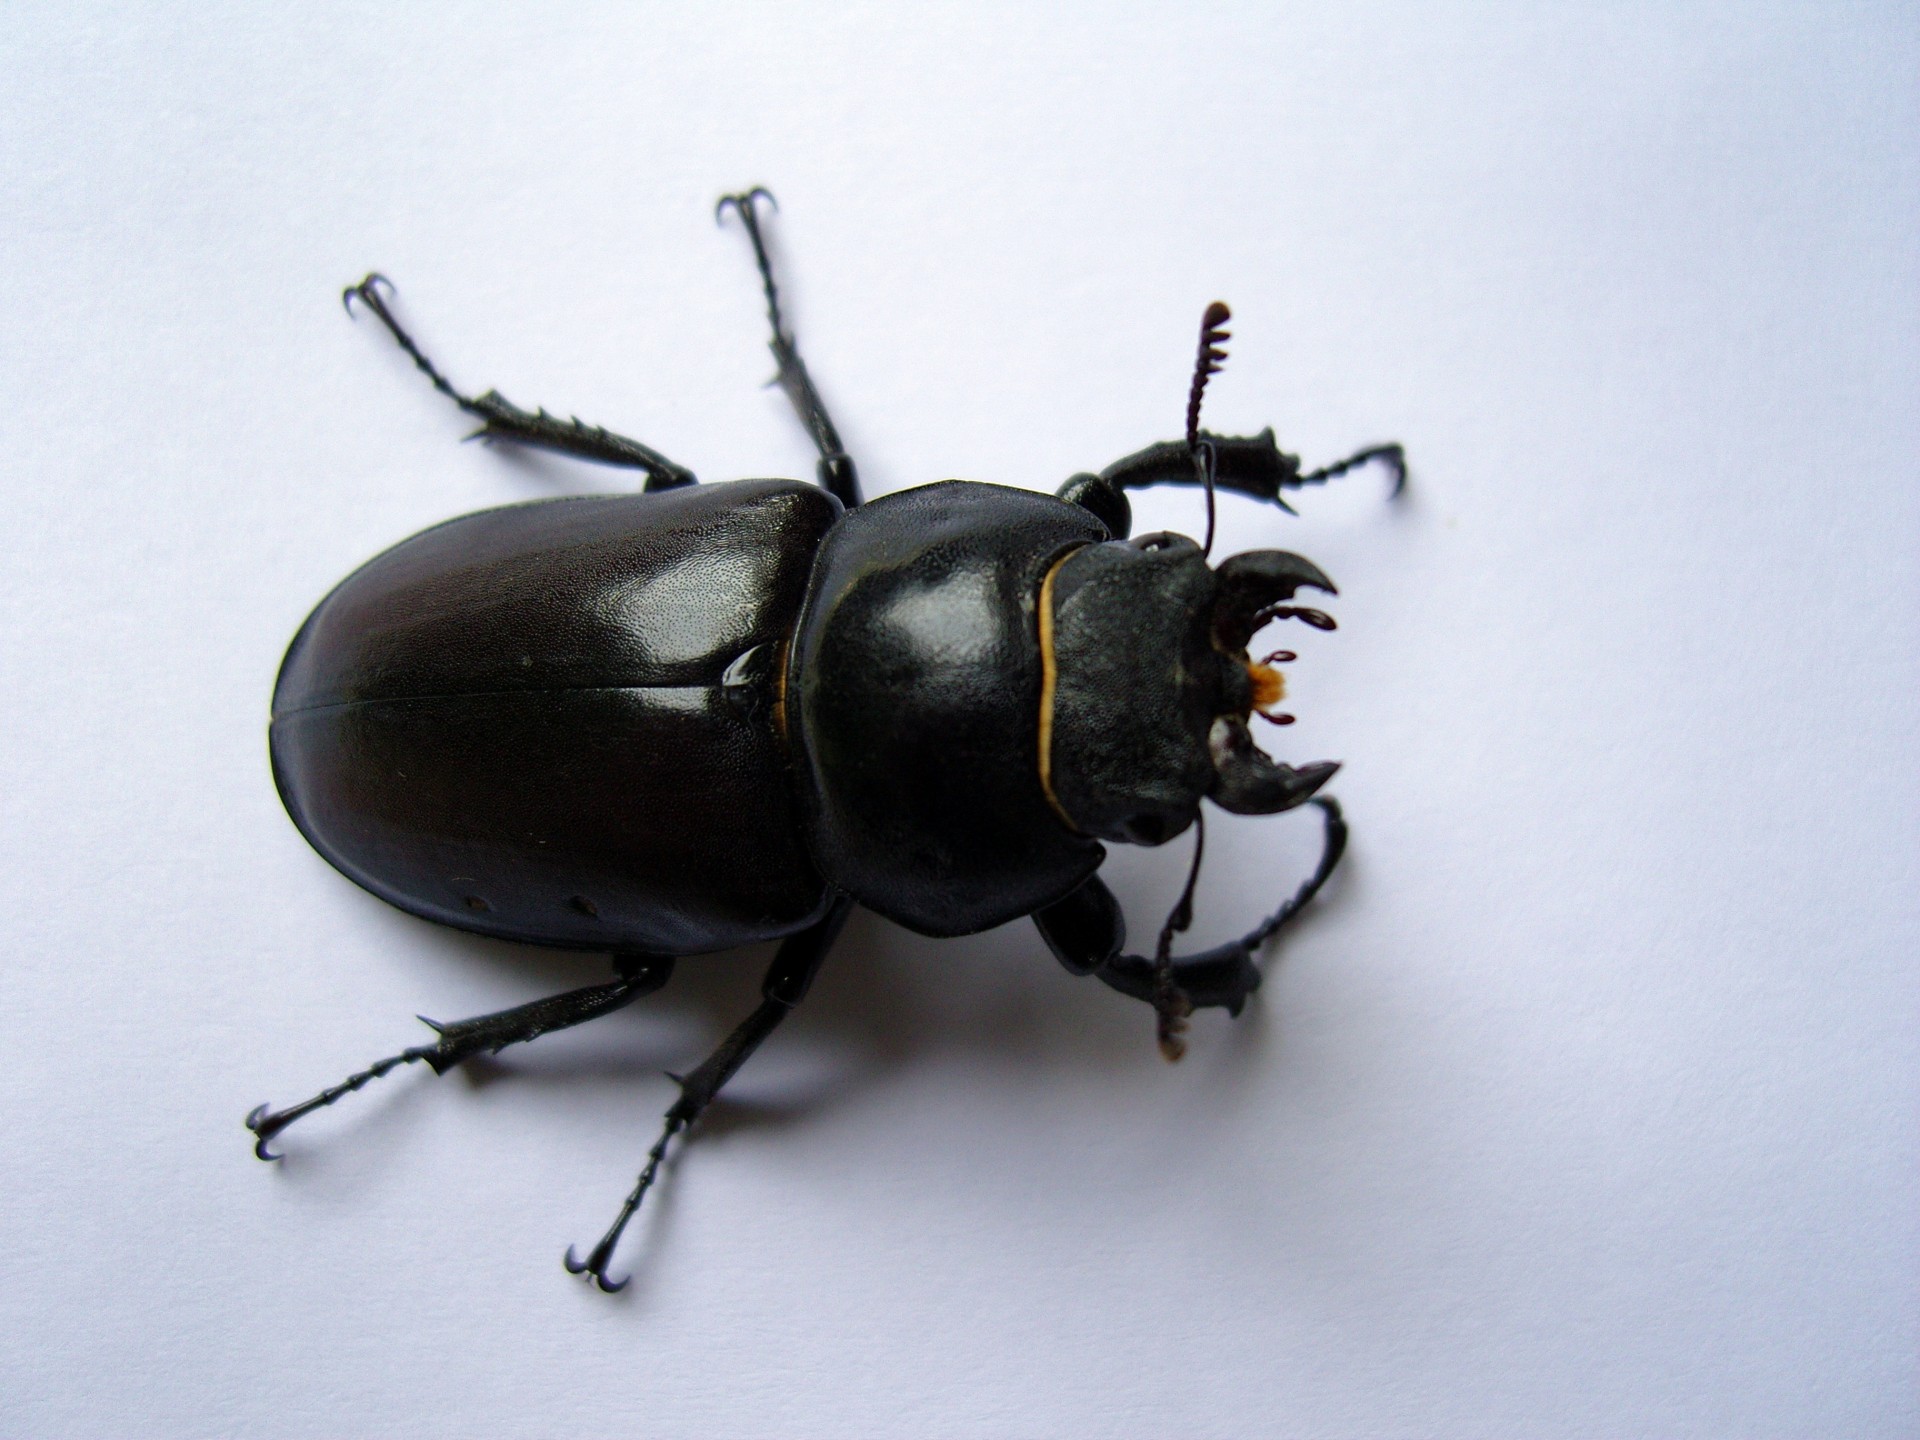 Female Stag Beetle